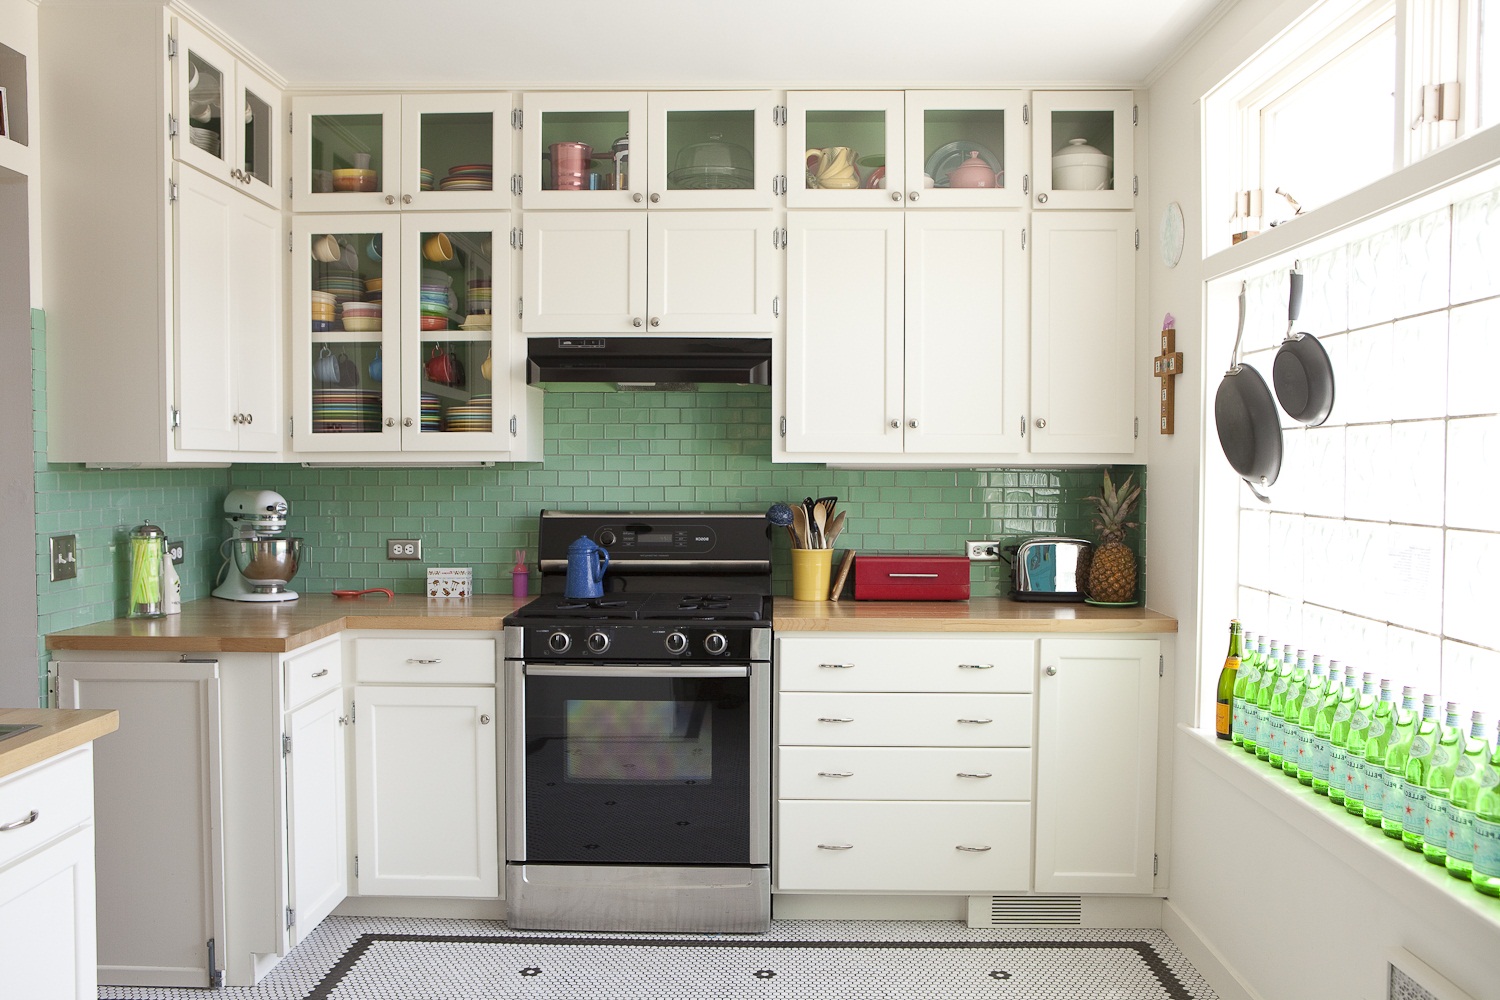 Thiết kế không gian cho nhà bếp của bạn (3)